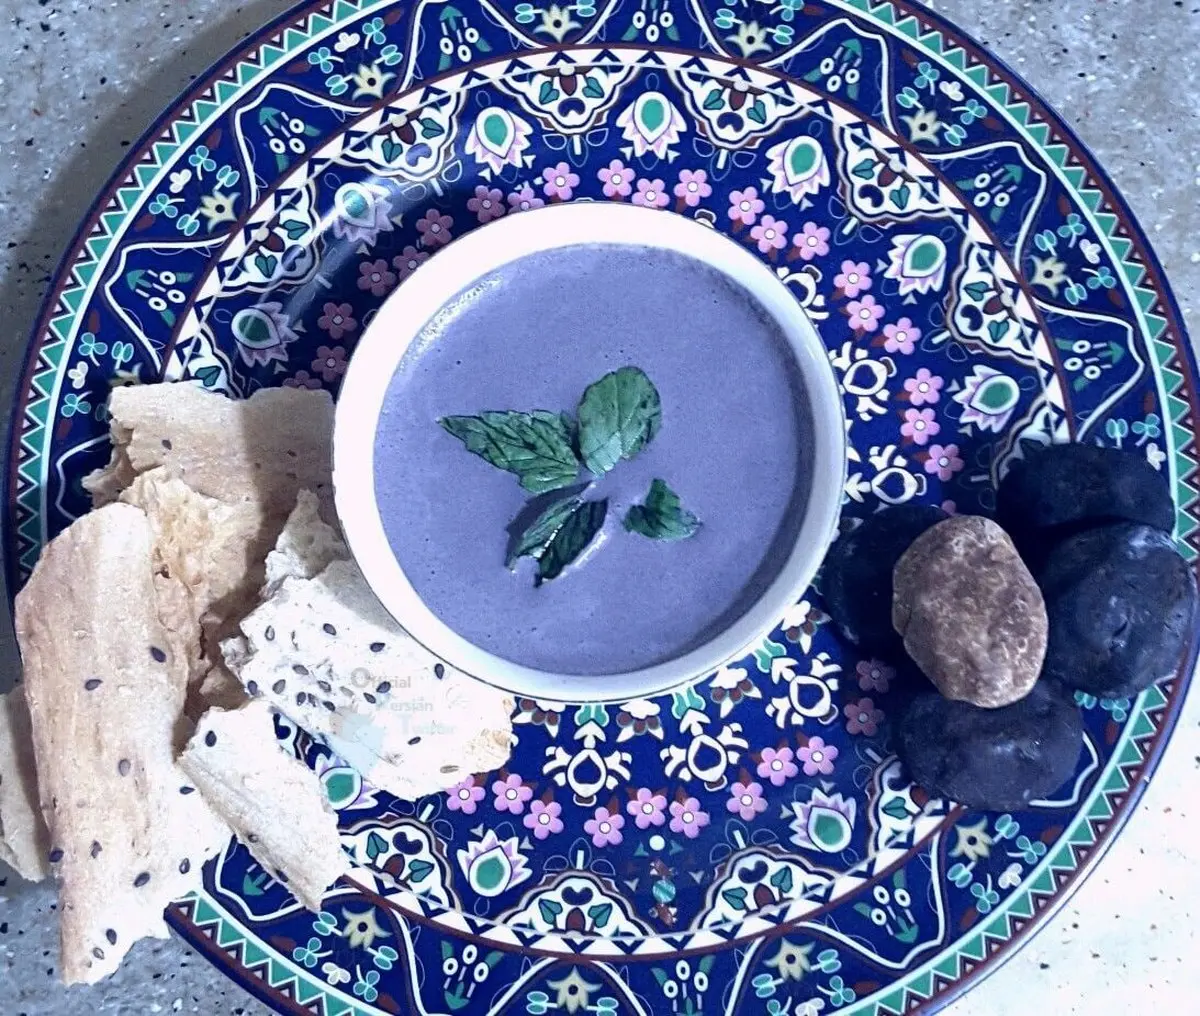 اولین غذای بنفش دنیا که متعلق به ایرانه! + عکس